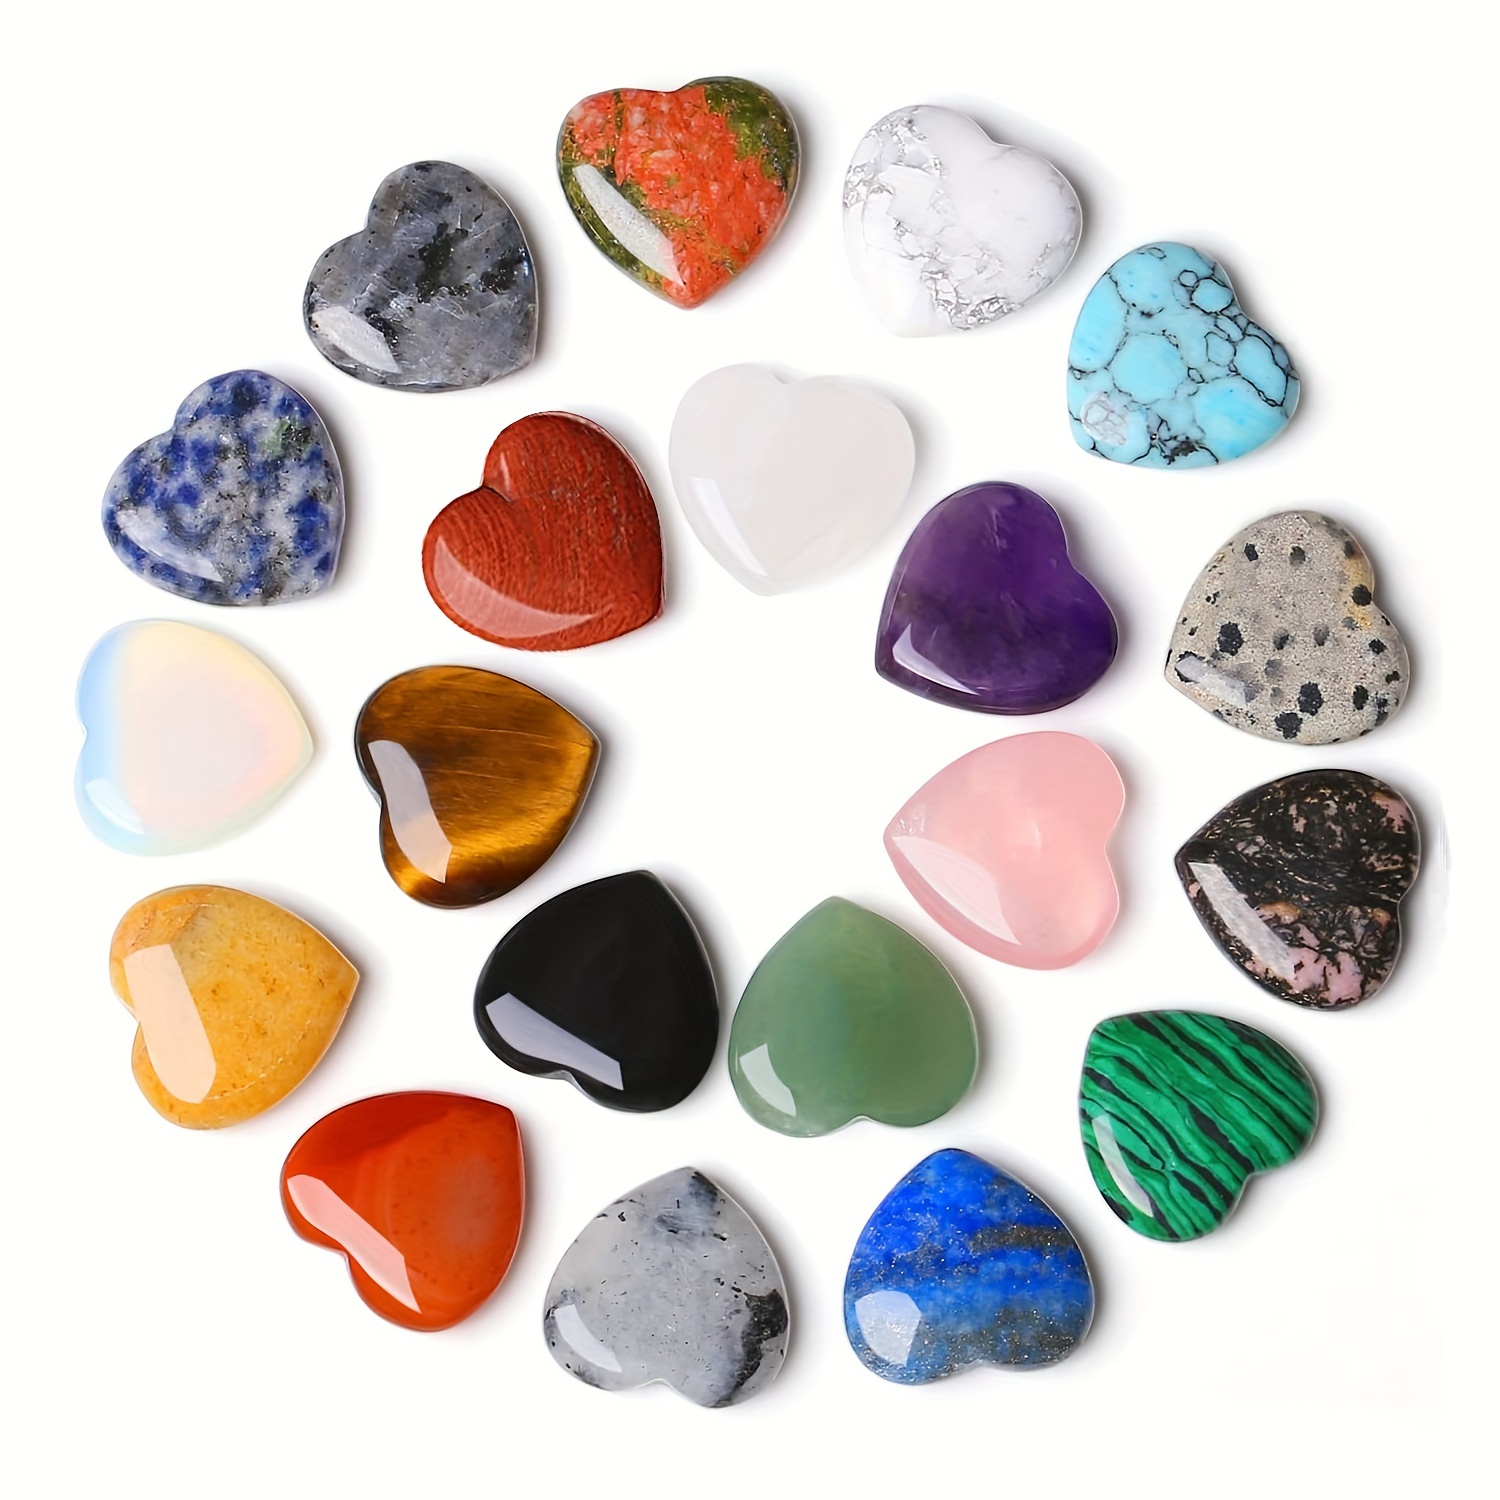 Piedras preciosas, Piedras y cristales, Piedras